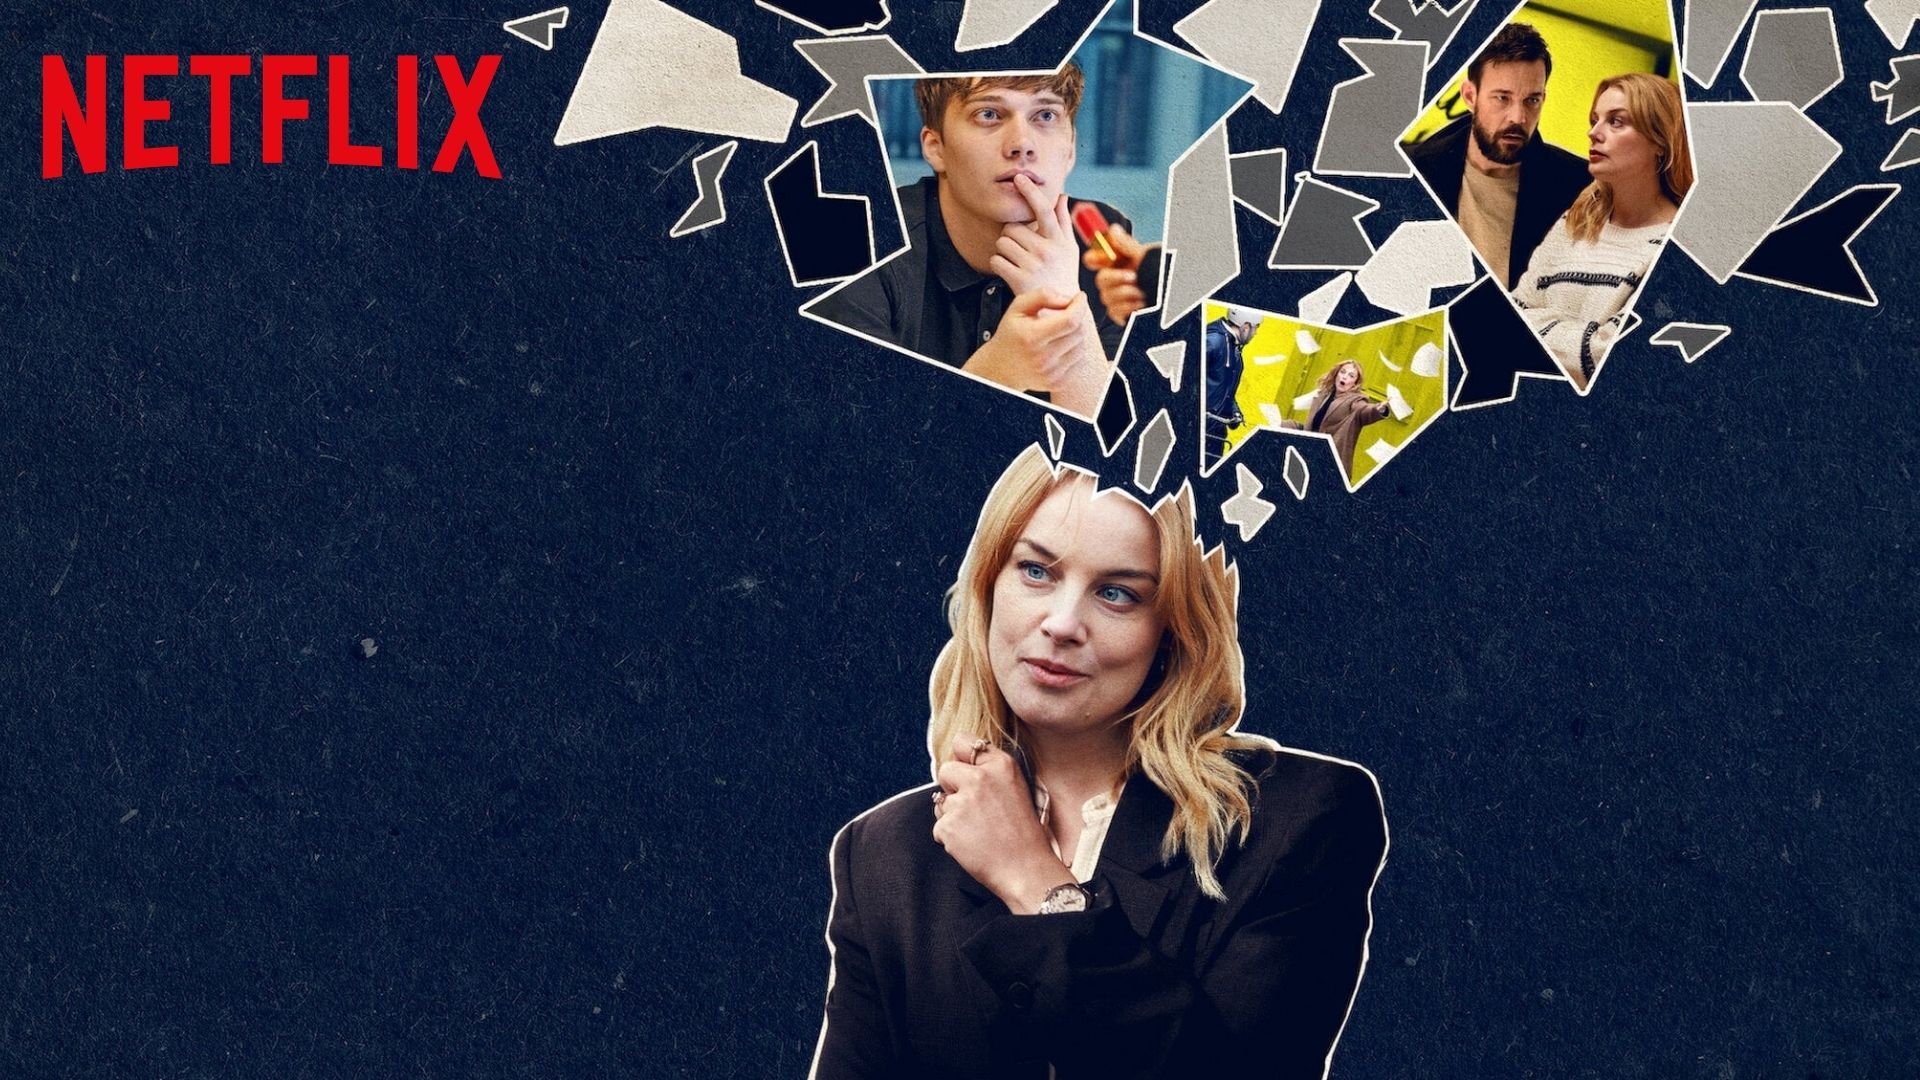 Love & Anarchy sur Netflix : c'est quoi cette comédie romantique ? -  CinéSéries